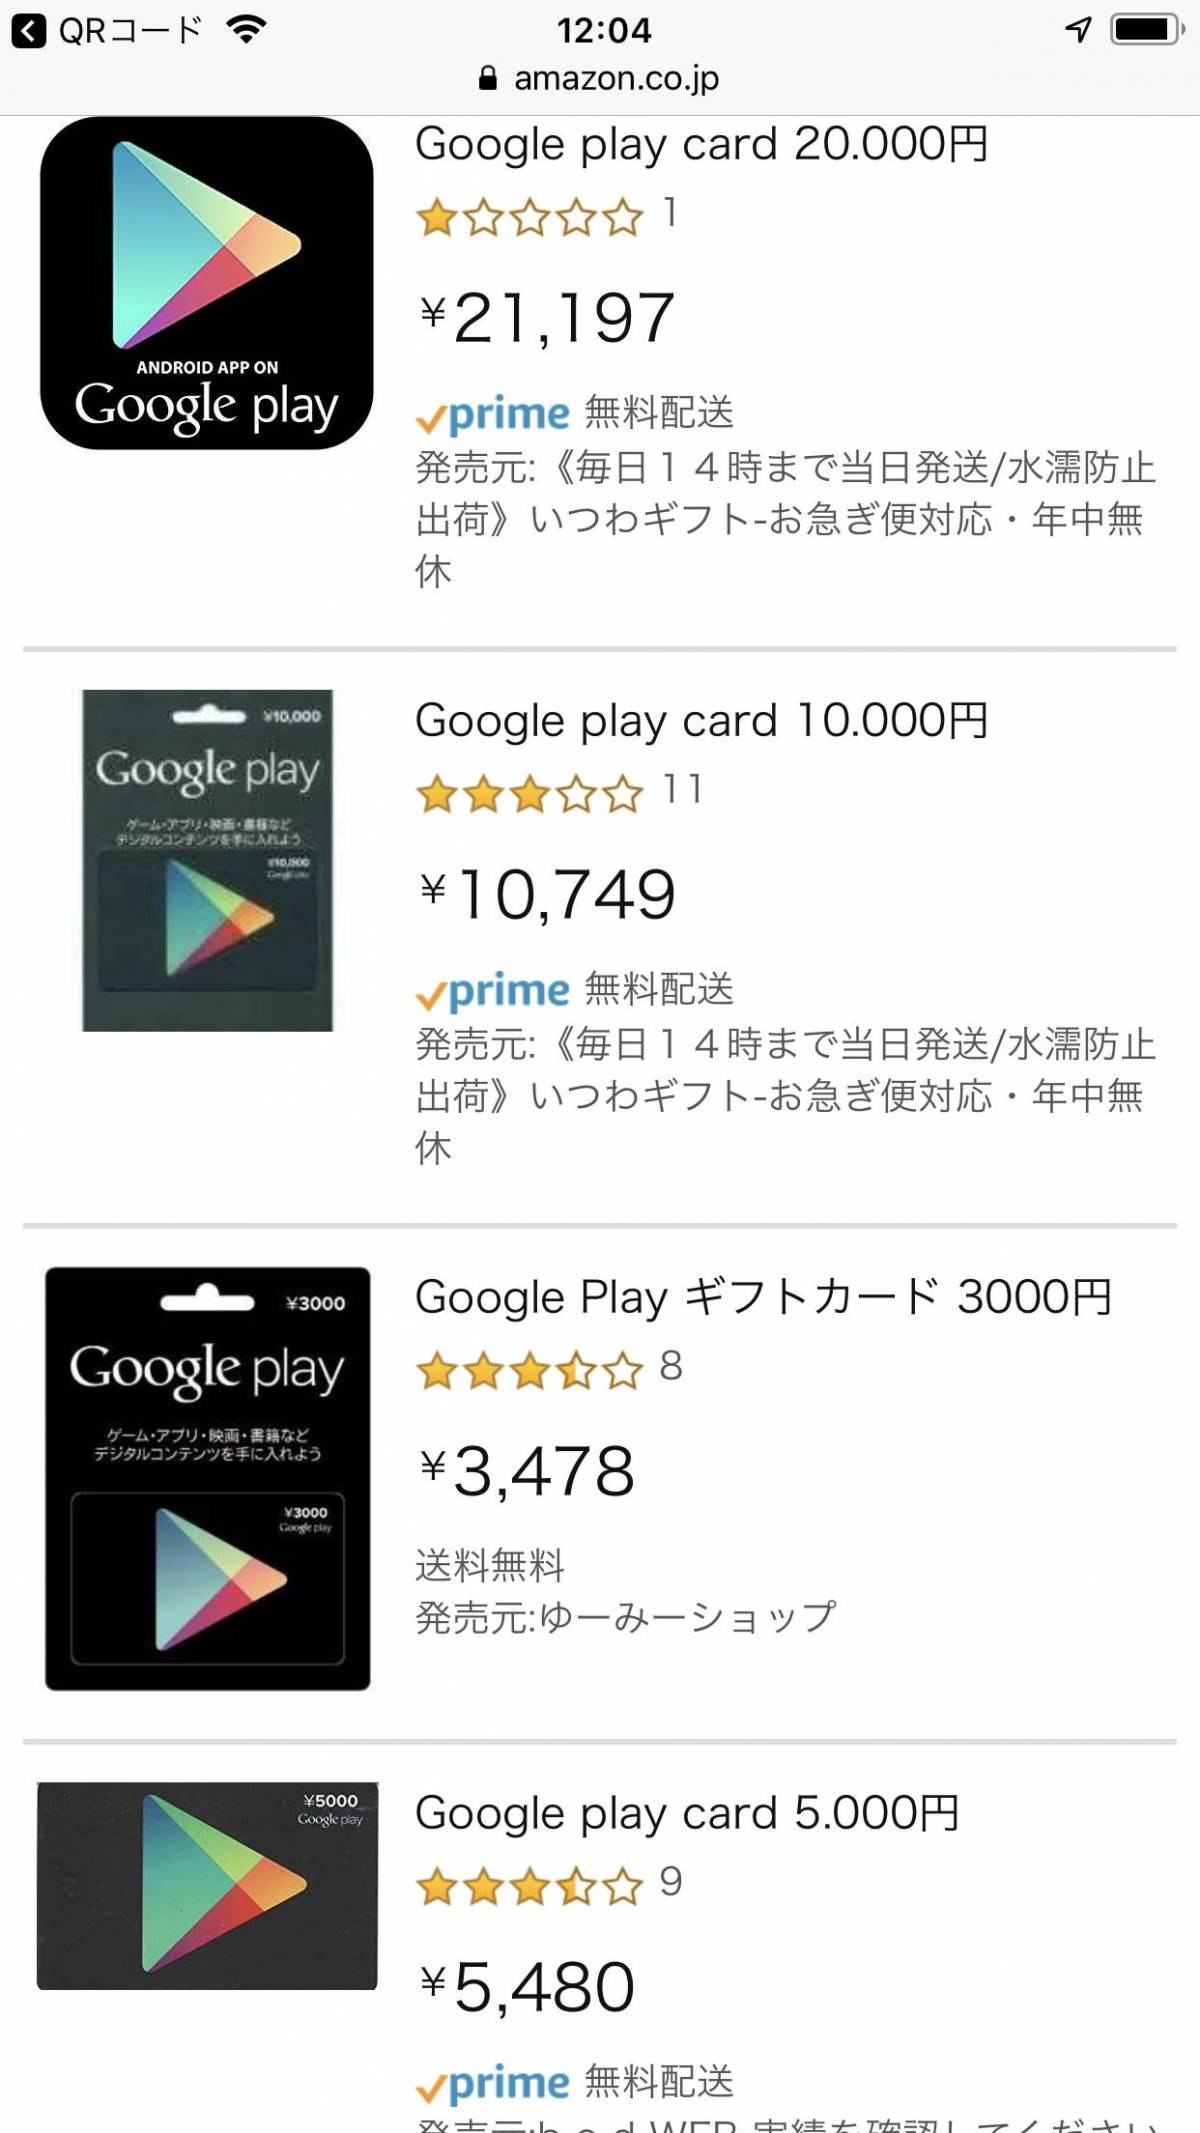 Google Play ギフトカード の使い方 購入 チャージ 使い道 割引など Appliv Topics